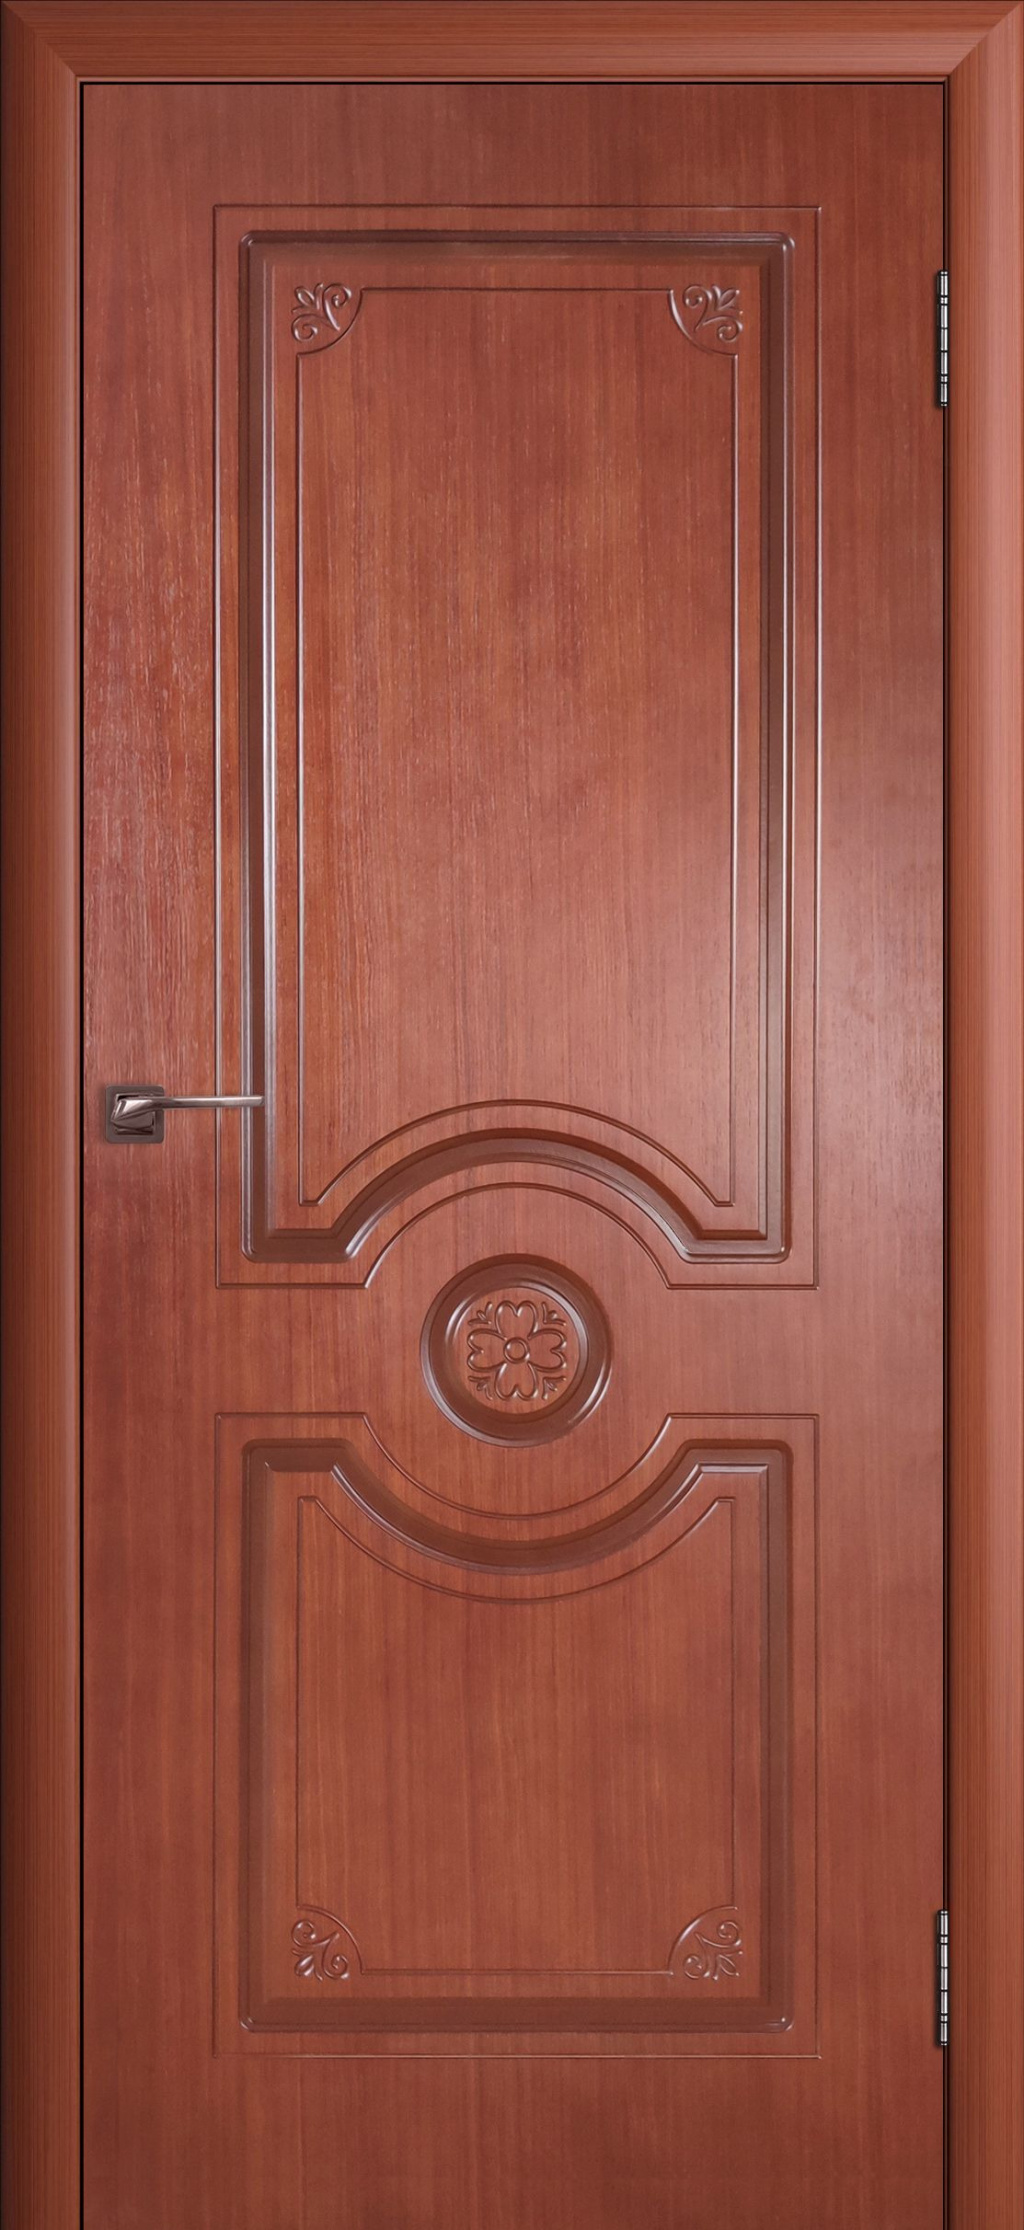 Cordondoor Межкомнатная дверь Доминика ПГ, арт. 10604 - фото №1